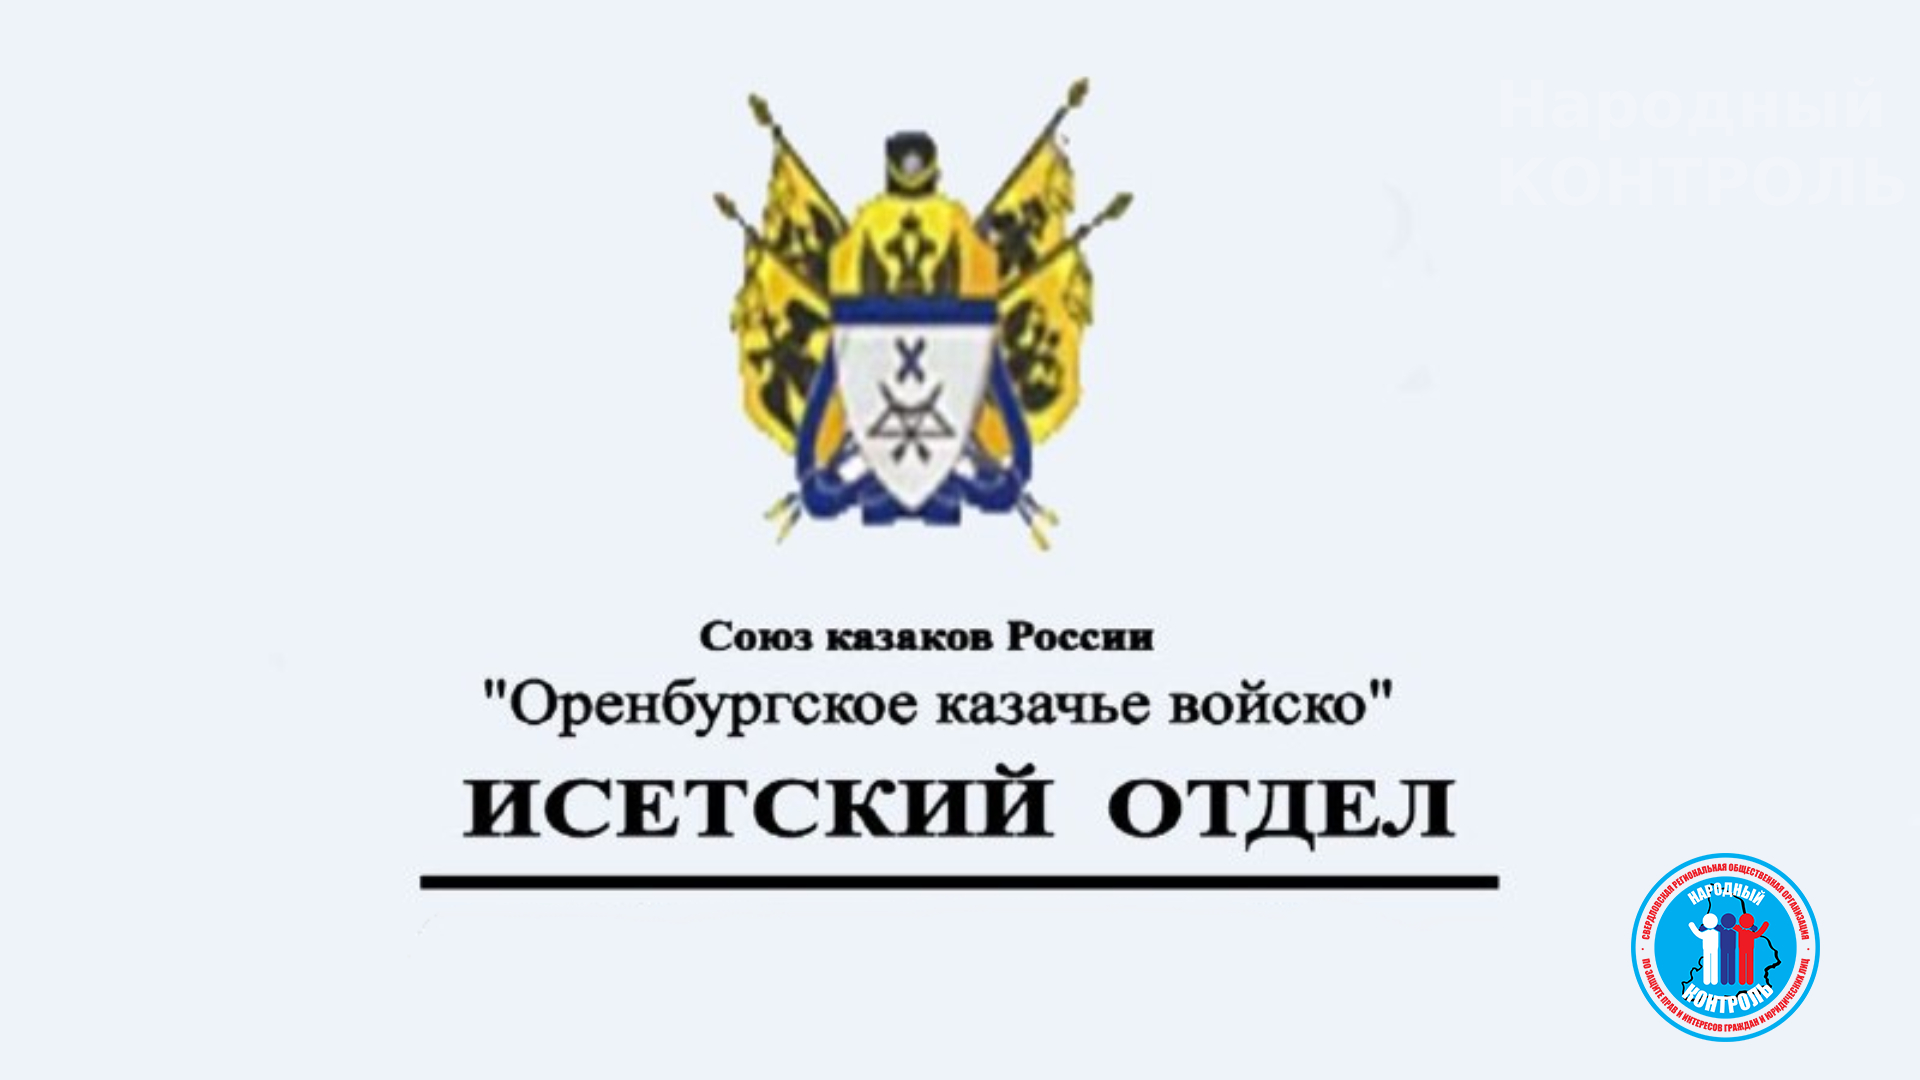 Обращение Оренбургского казачьего войска о невыплате “боевых” казакам